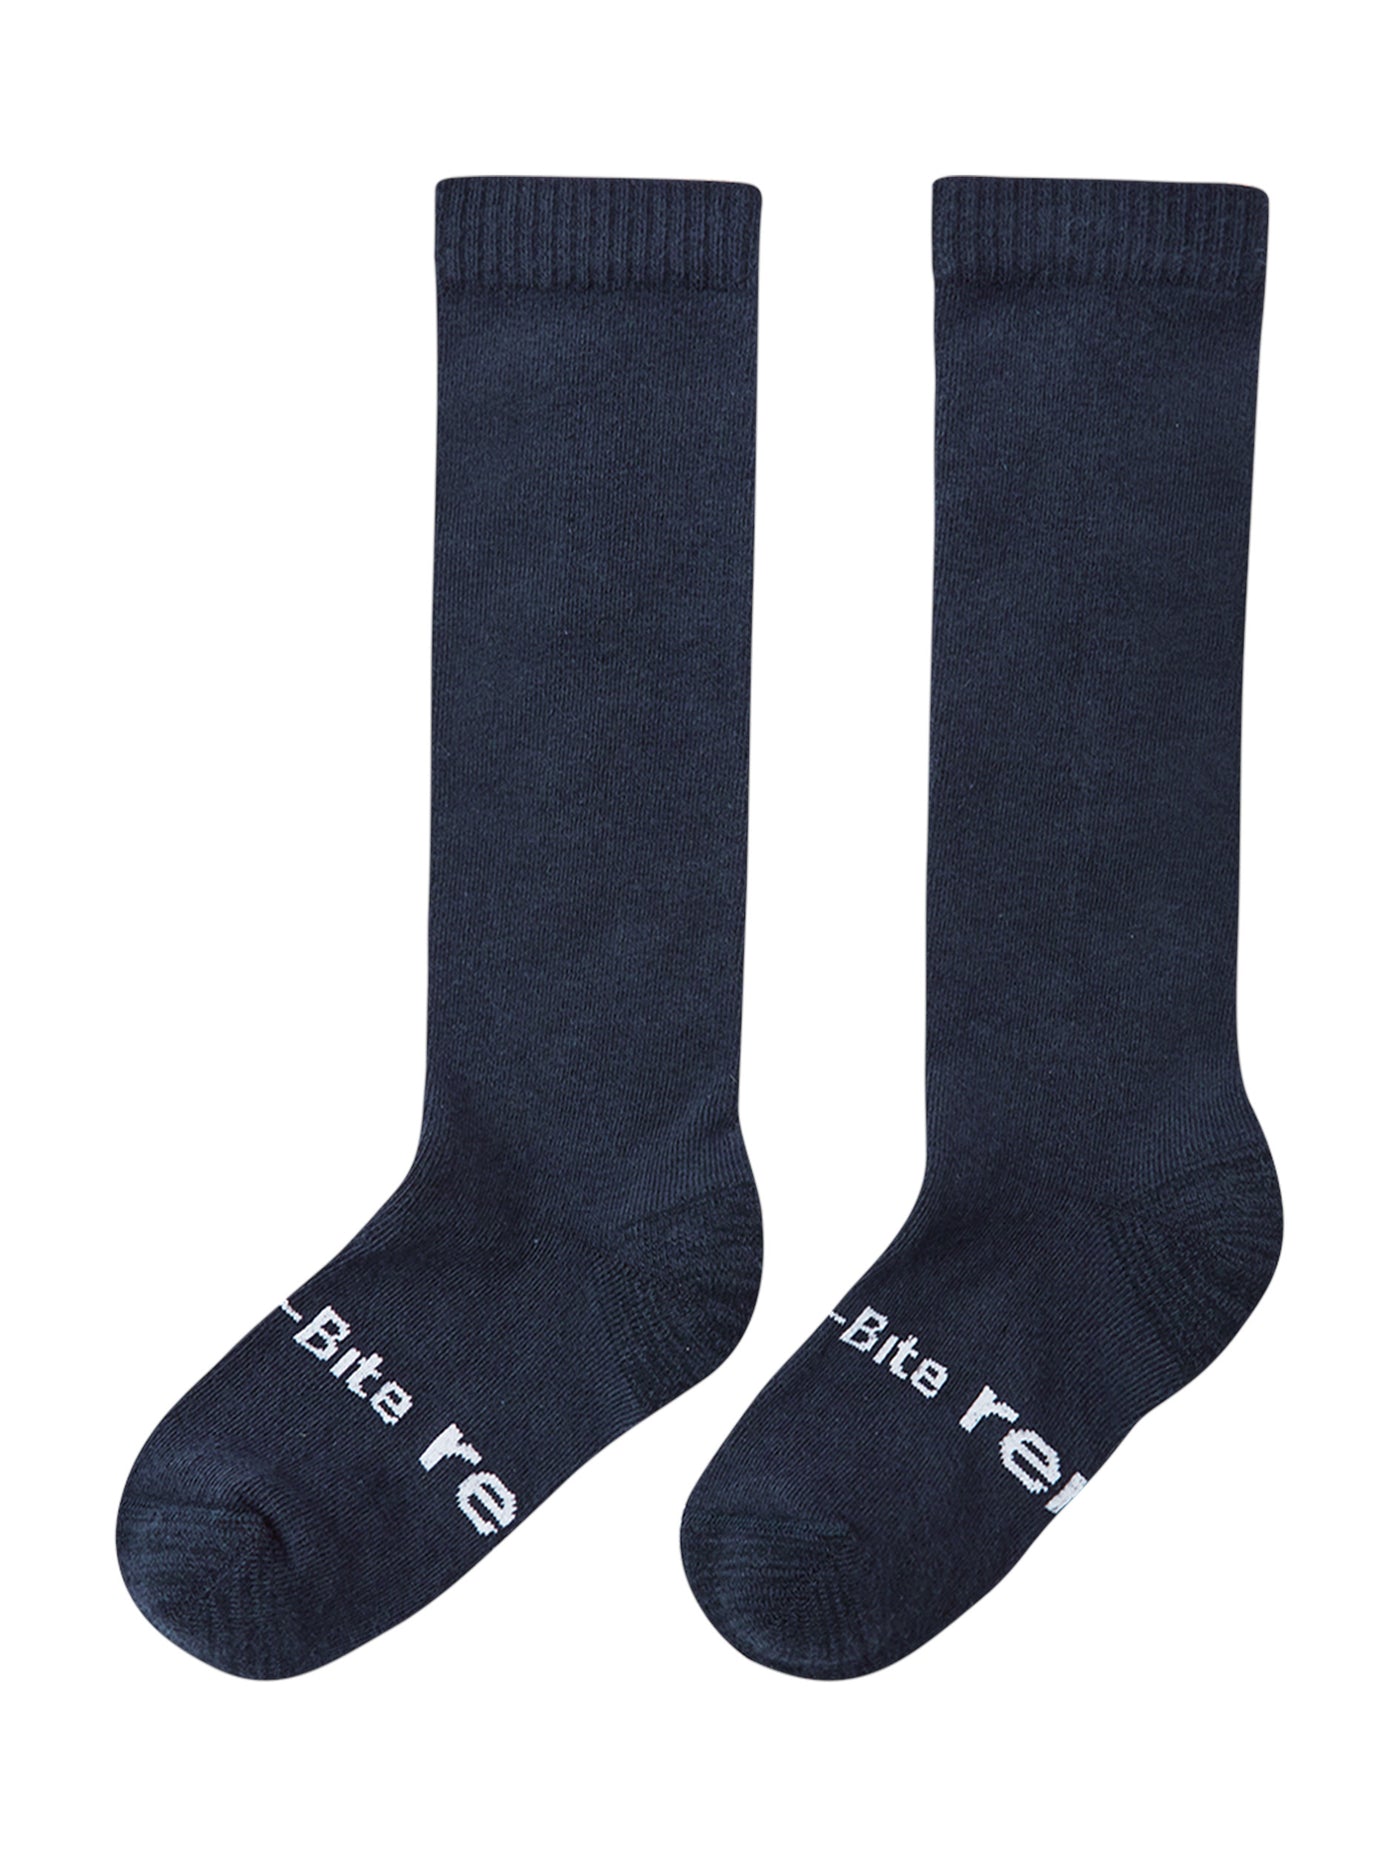 Reiman tummansiniset Karkuun Anti-Bite pitkävartiset sukat toiselta suunnalta kuvattuna